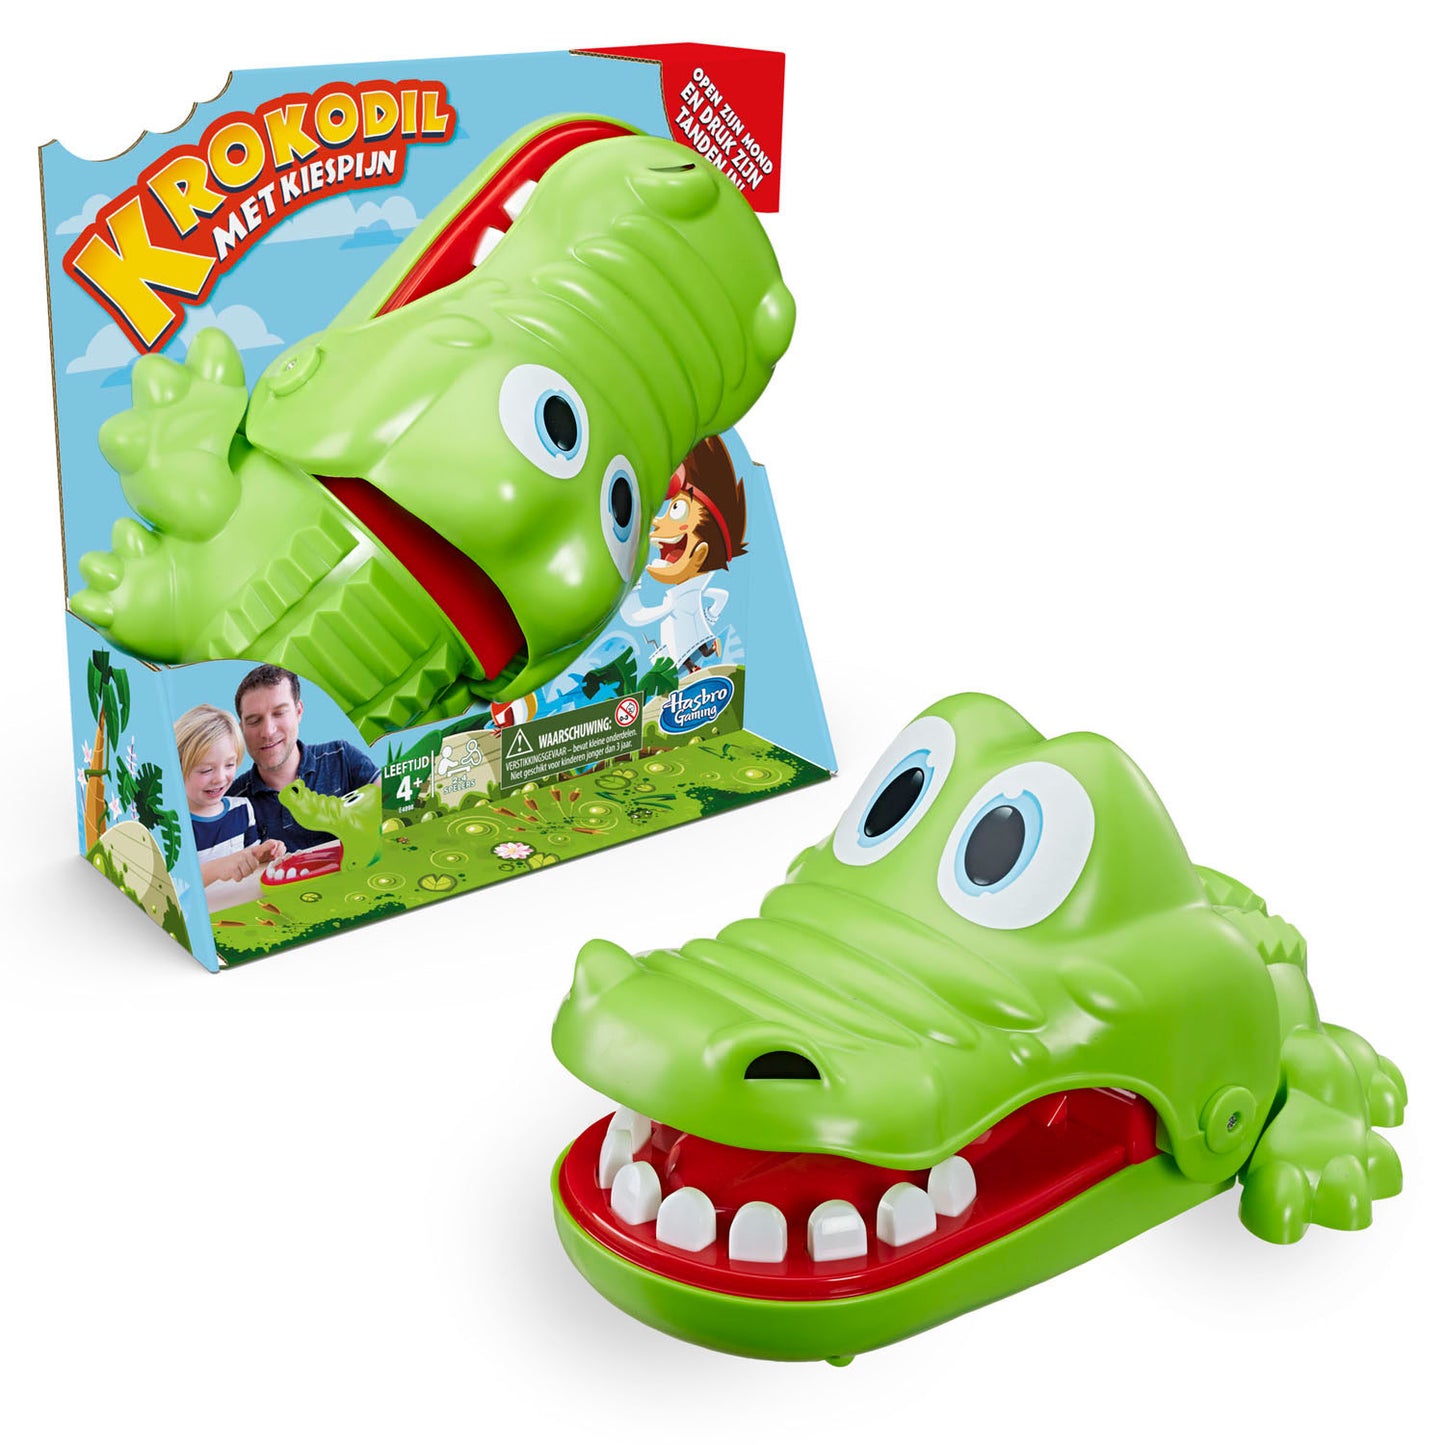 Hasbro Crocodile con dolor de muelas